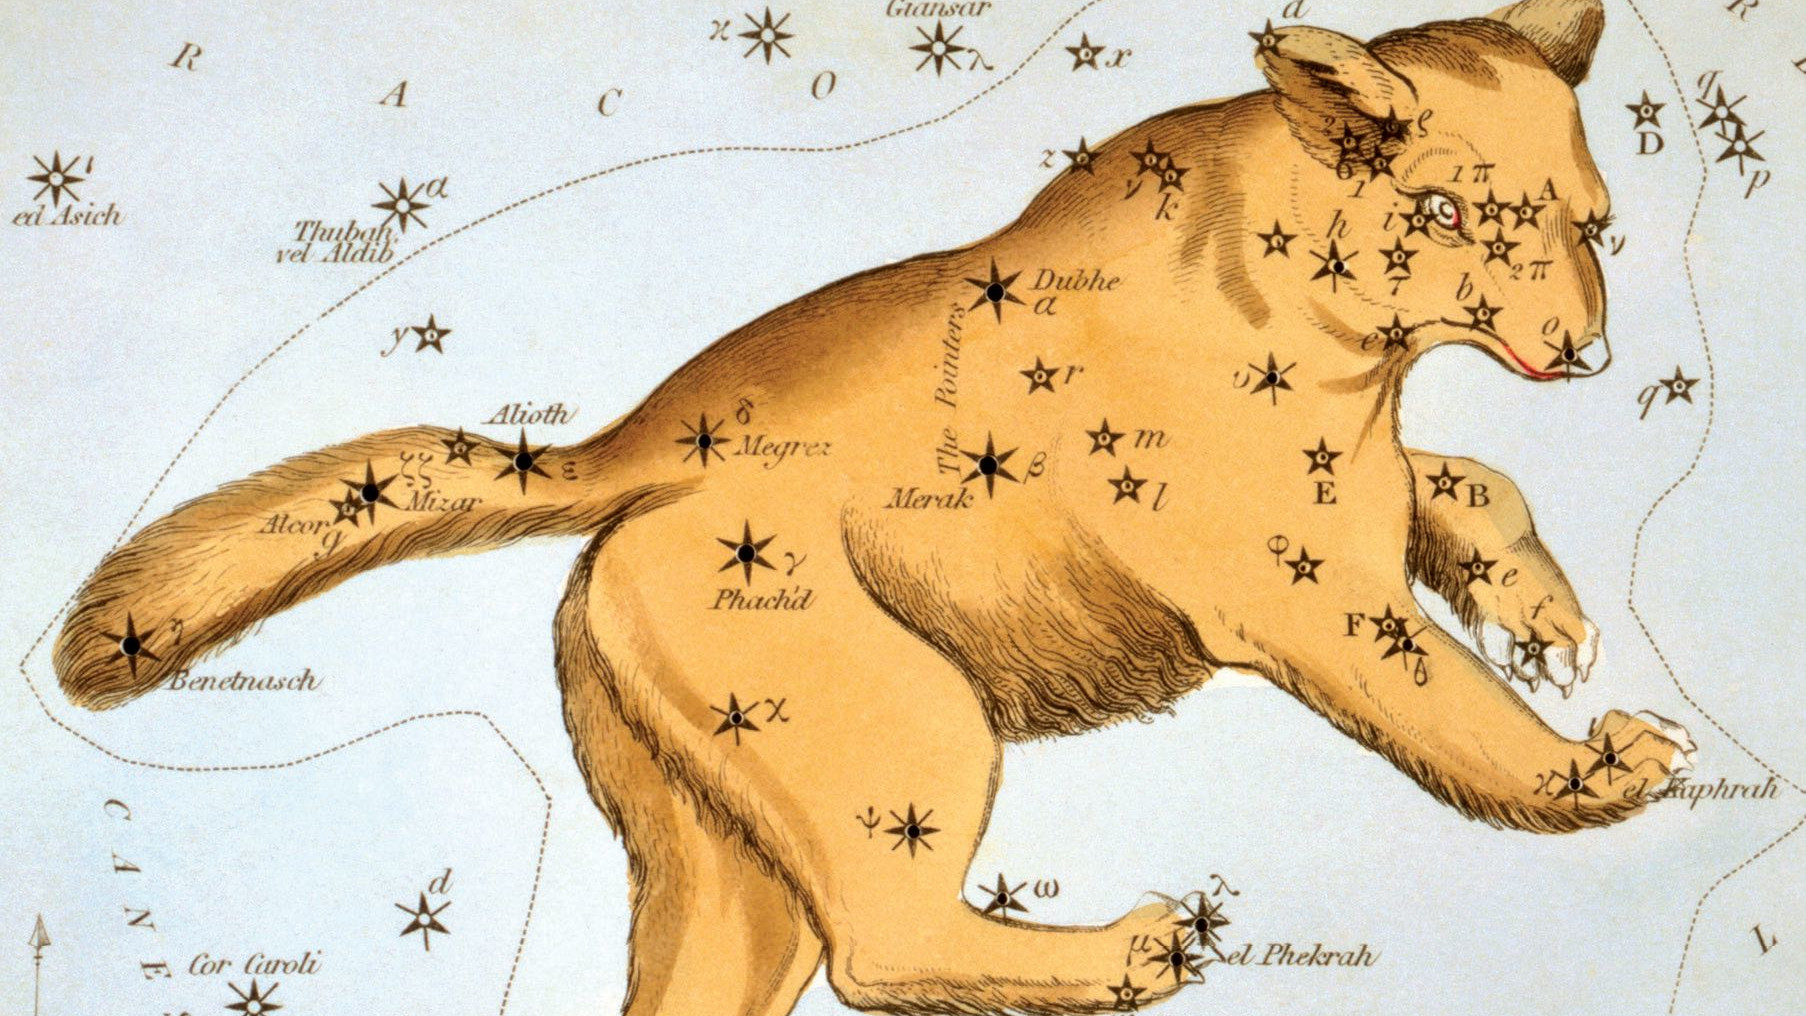 I den bakre delen av Stora björnen finns det mest kända stjärnmönstret (asterism): Karlavagnen.